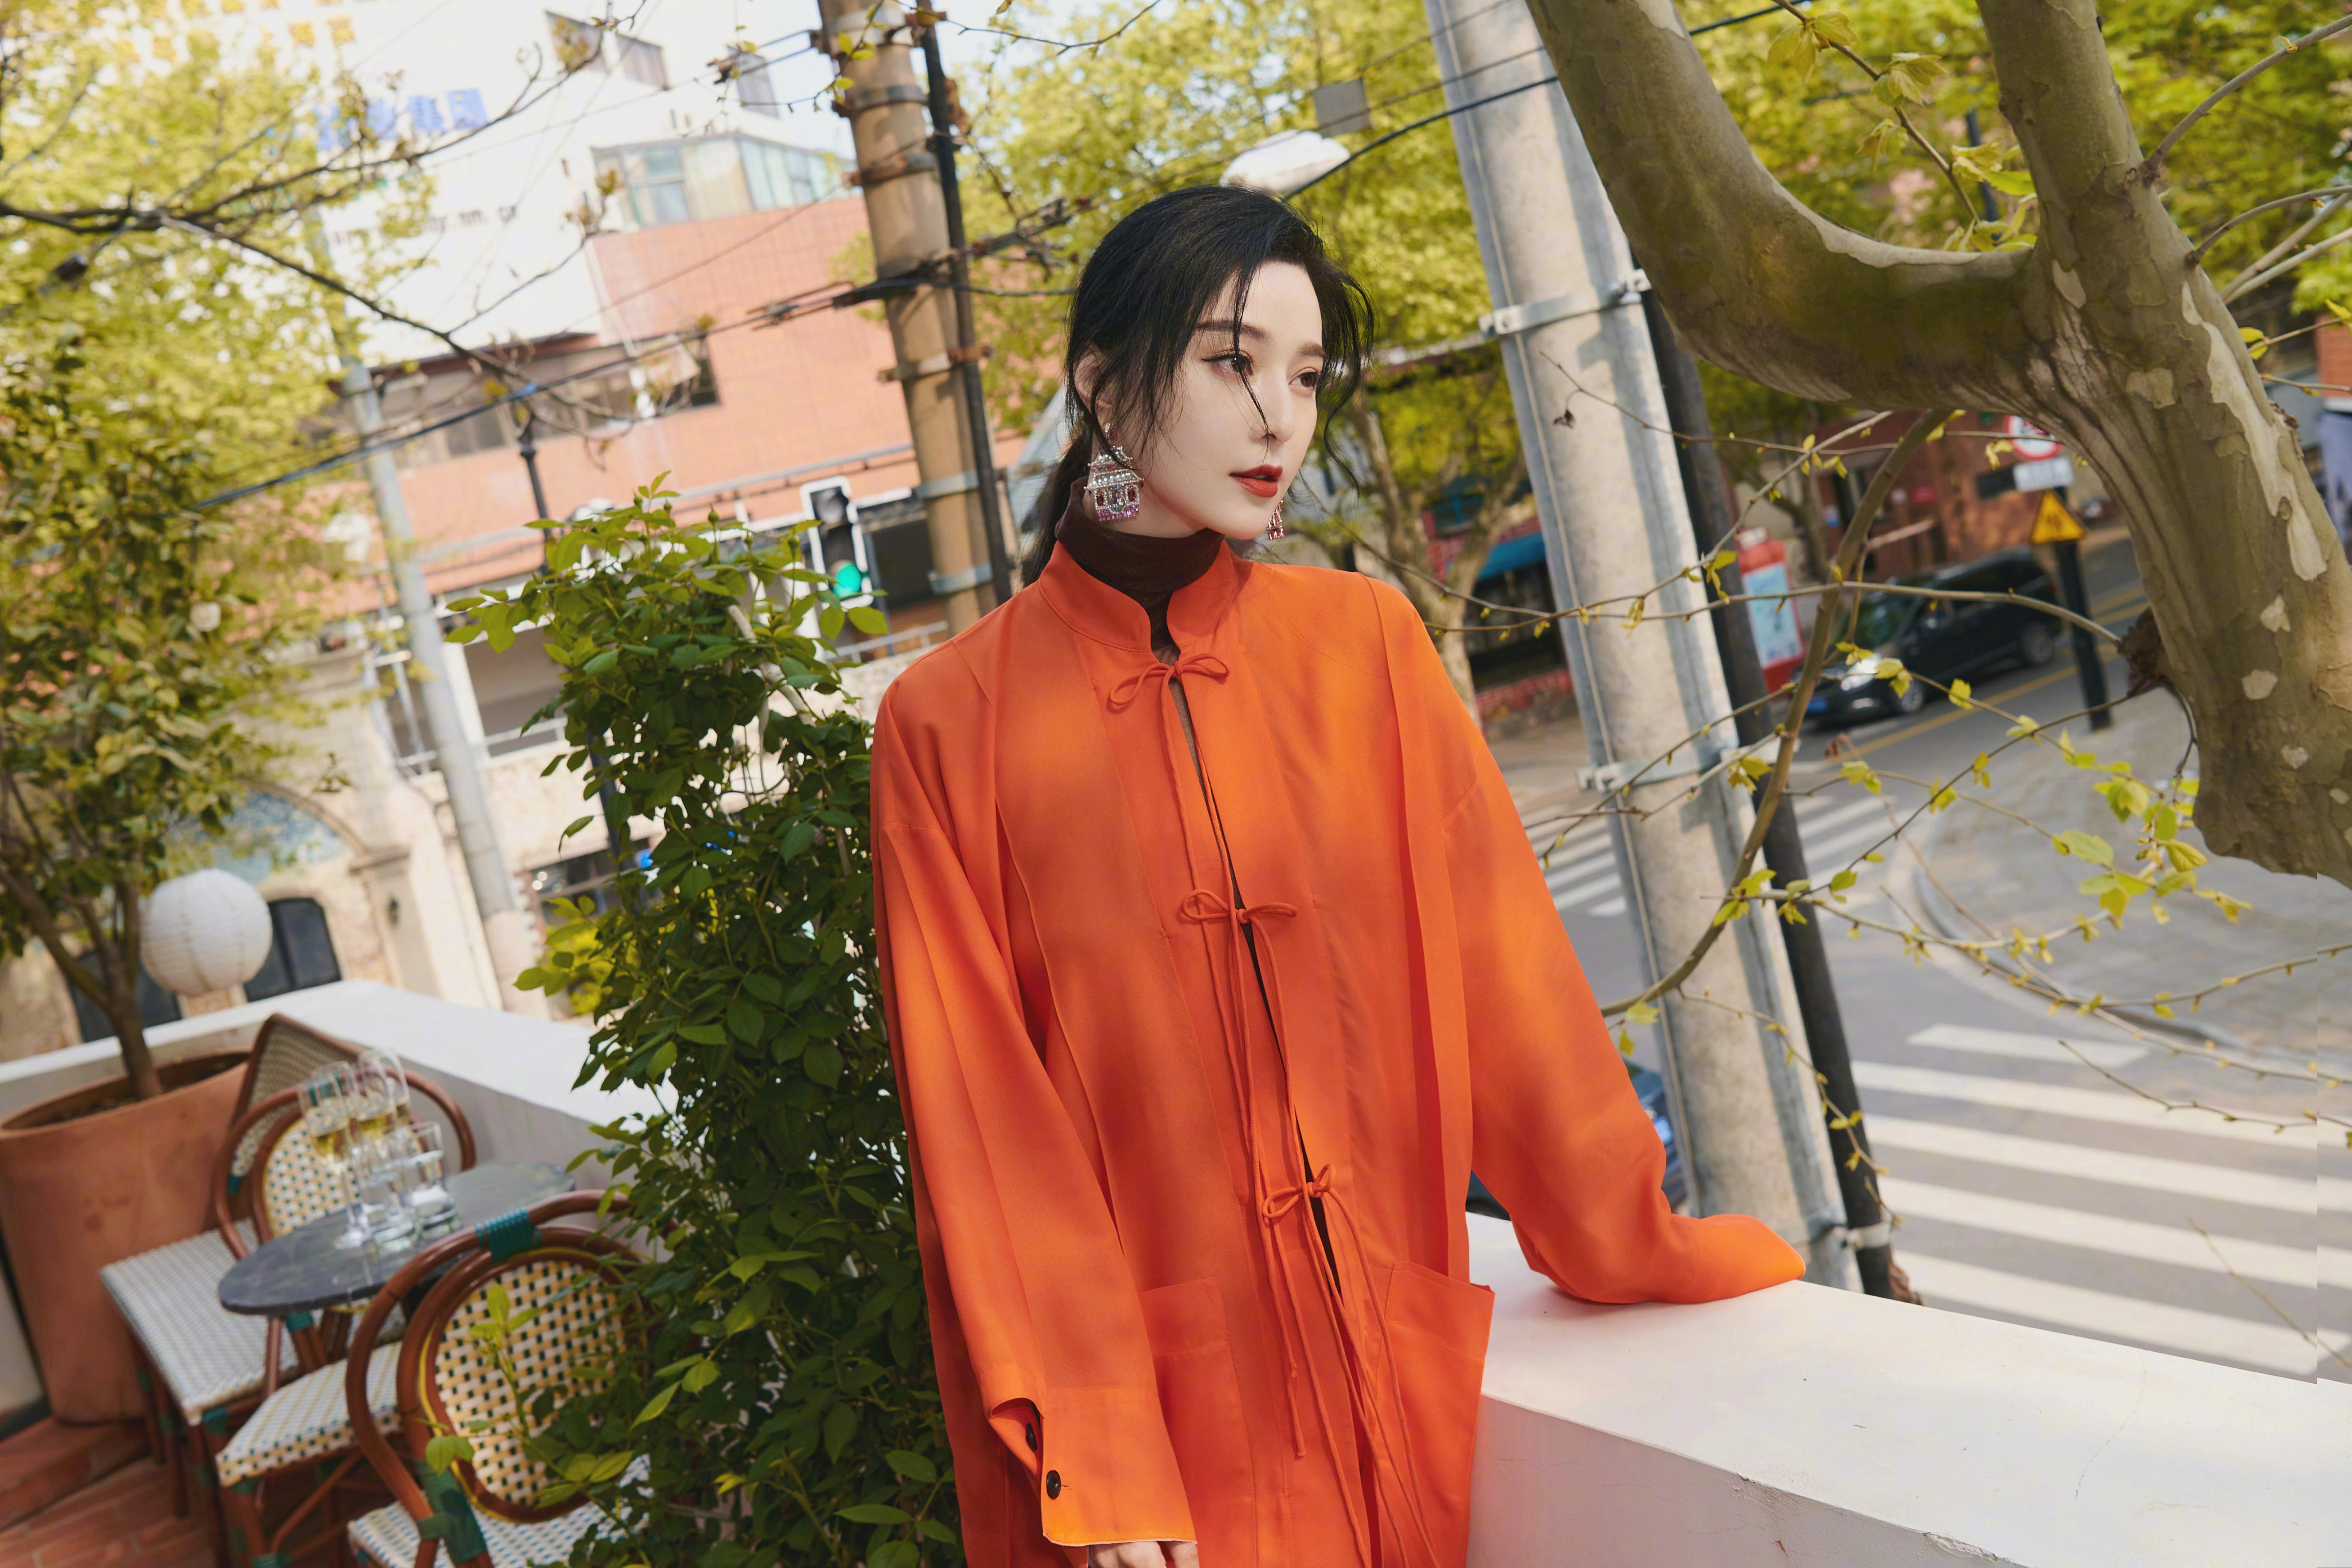 范冰冰橙色复古造型明艳动人 唐装风衣设计诠释中式经典,